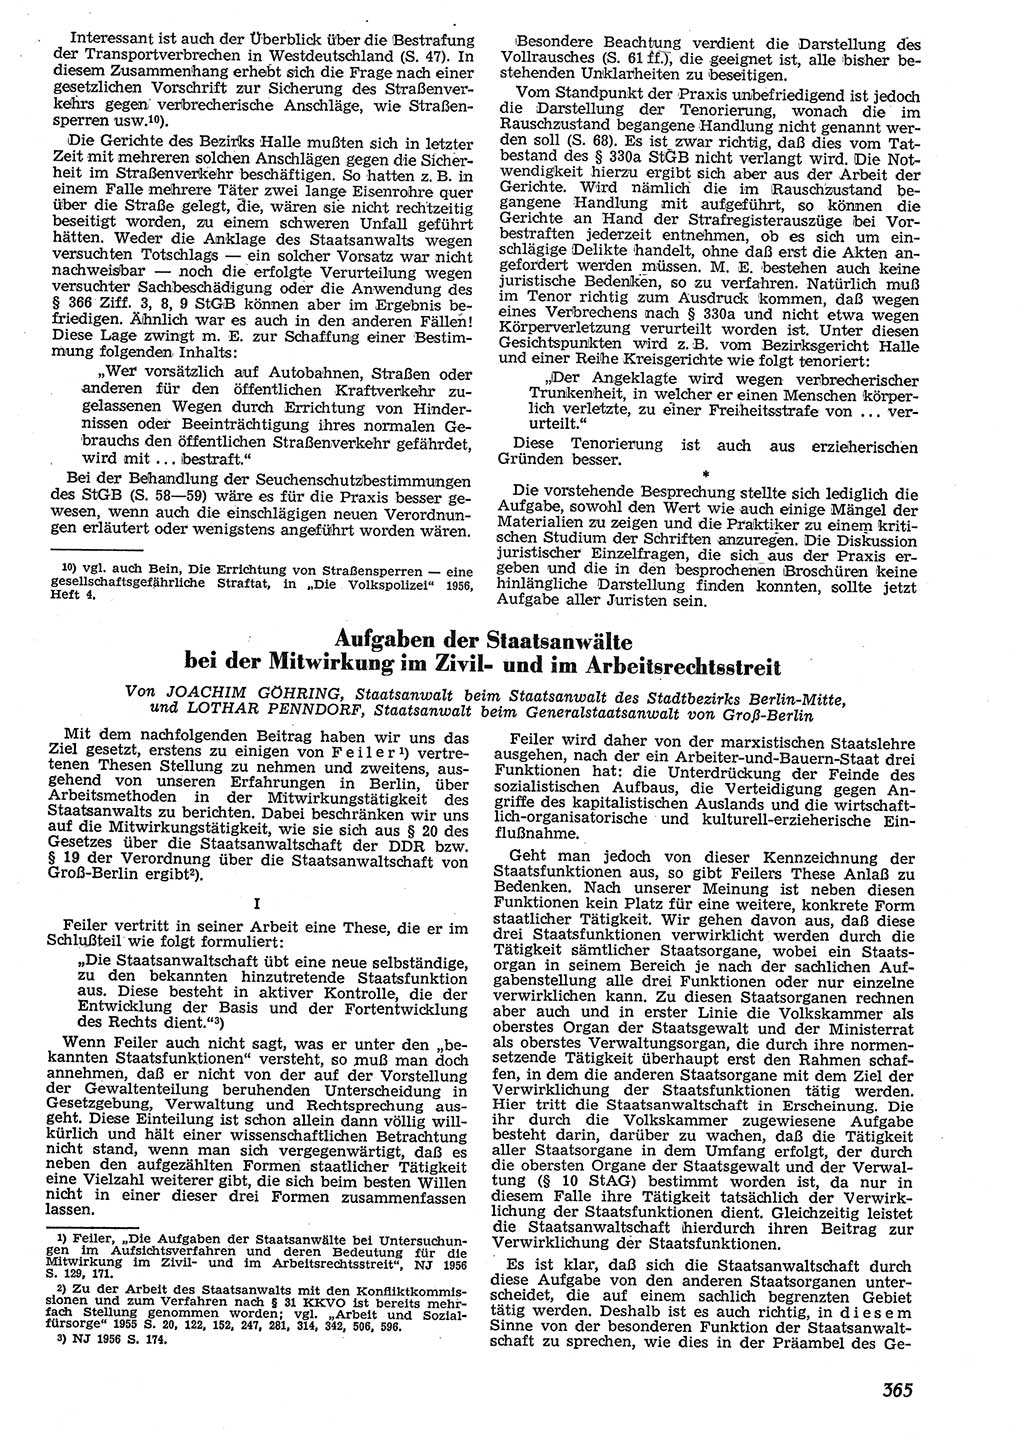 Neue Justiz (NJ), Zeitschrift für Recht und Rechtswissenschaft [Deutsche Demokratische Republik (DDR)], 10. Jahrgang 1956, Seite 365 (NJ DDR 1956, S. 365)